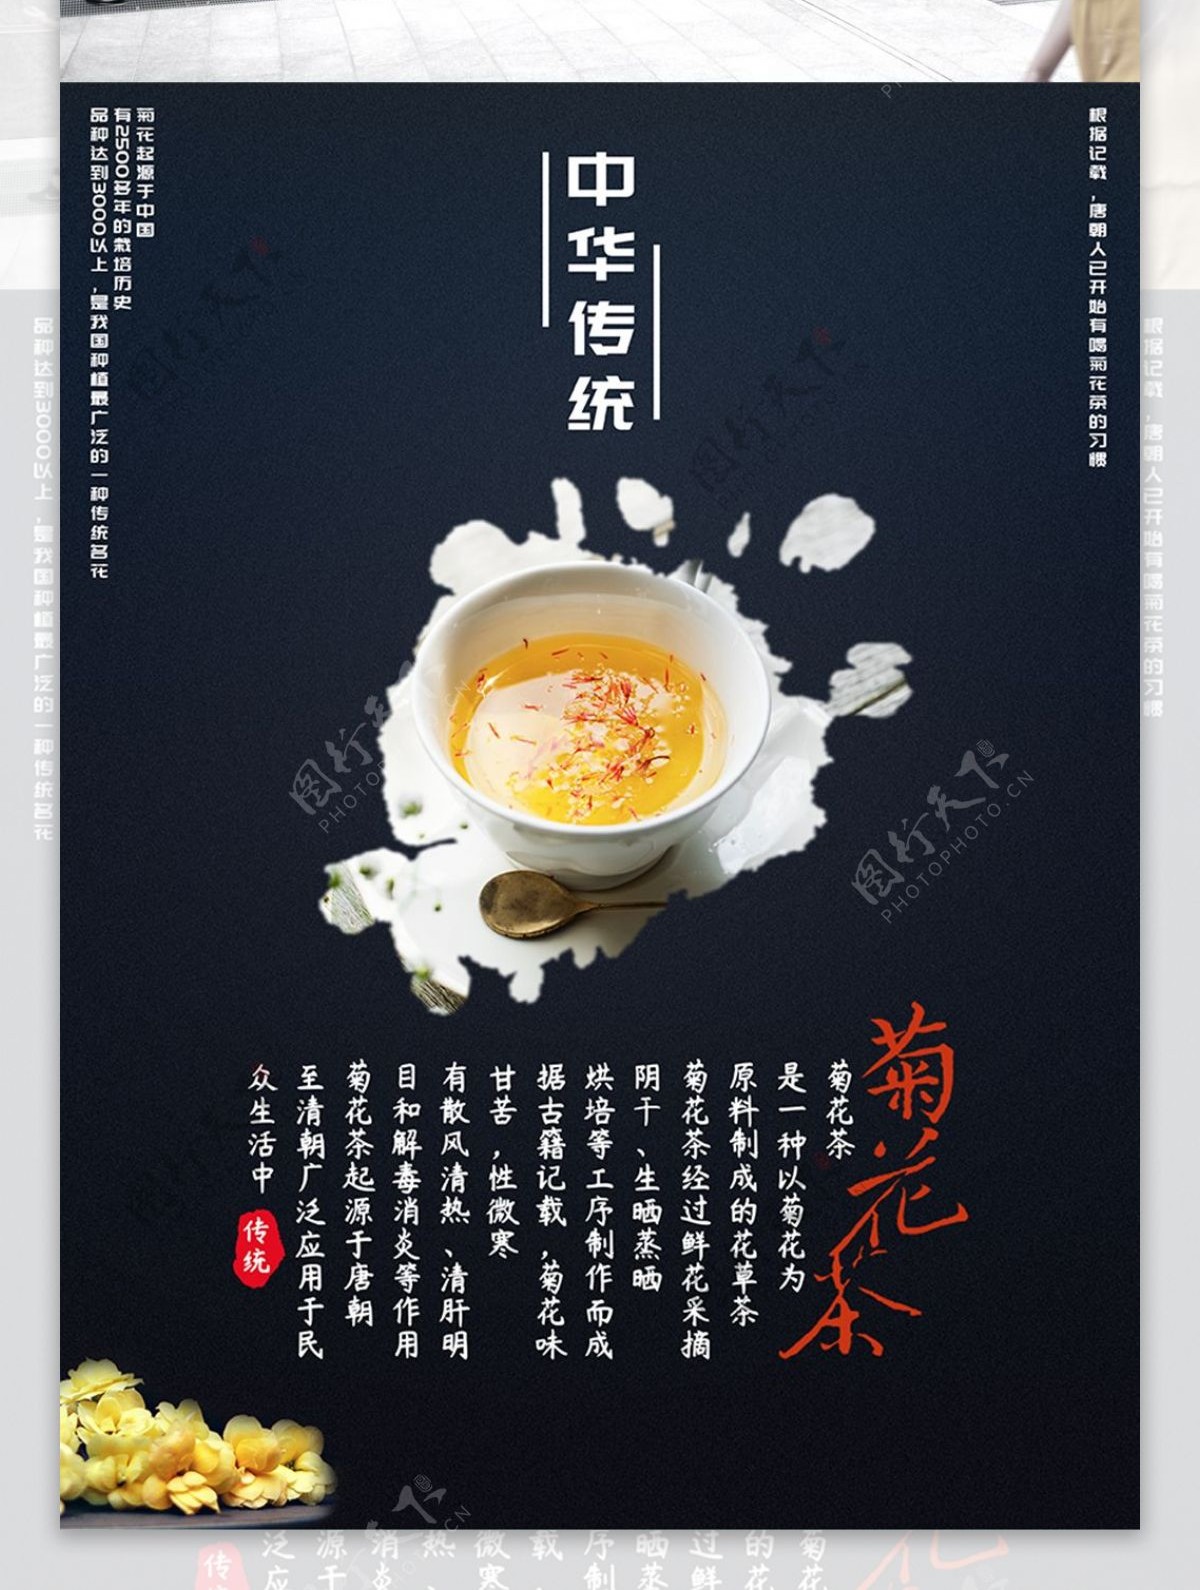 中华传统茶饮菊花茶古典中国风美食海报